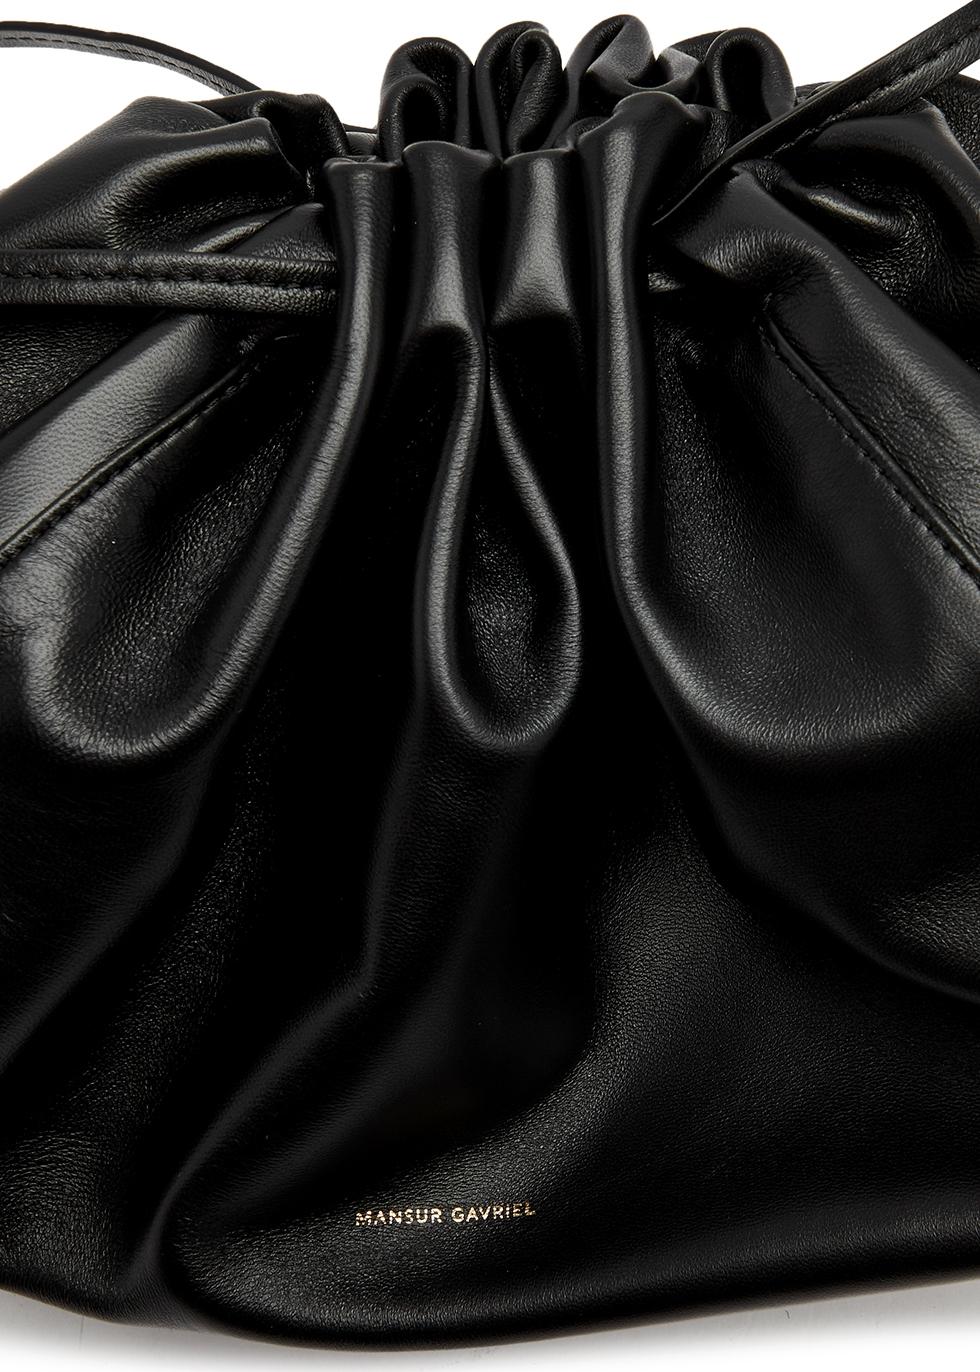 Mansur Gavriel Notte Leather Shoulder Bag in Black